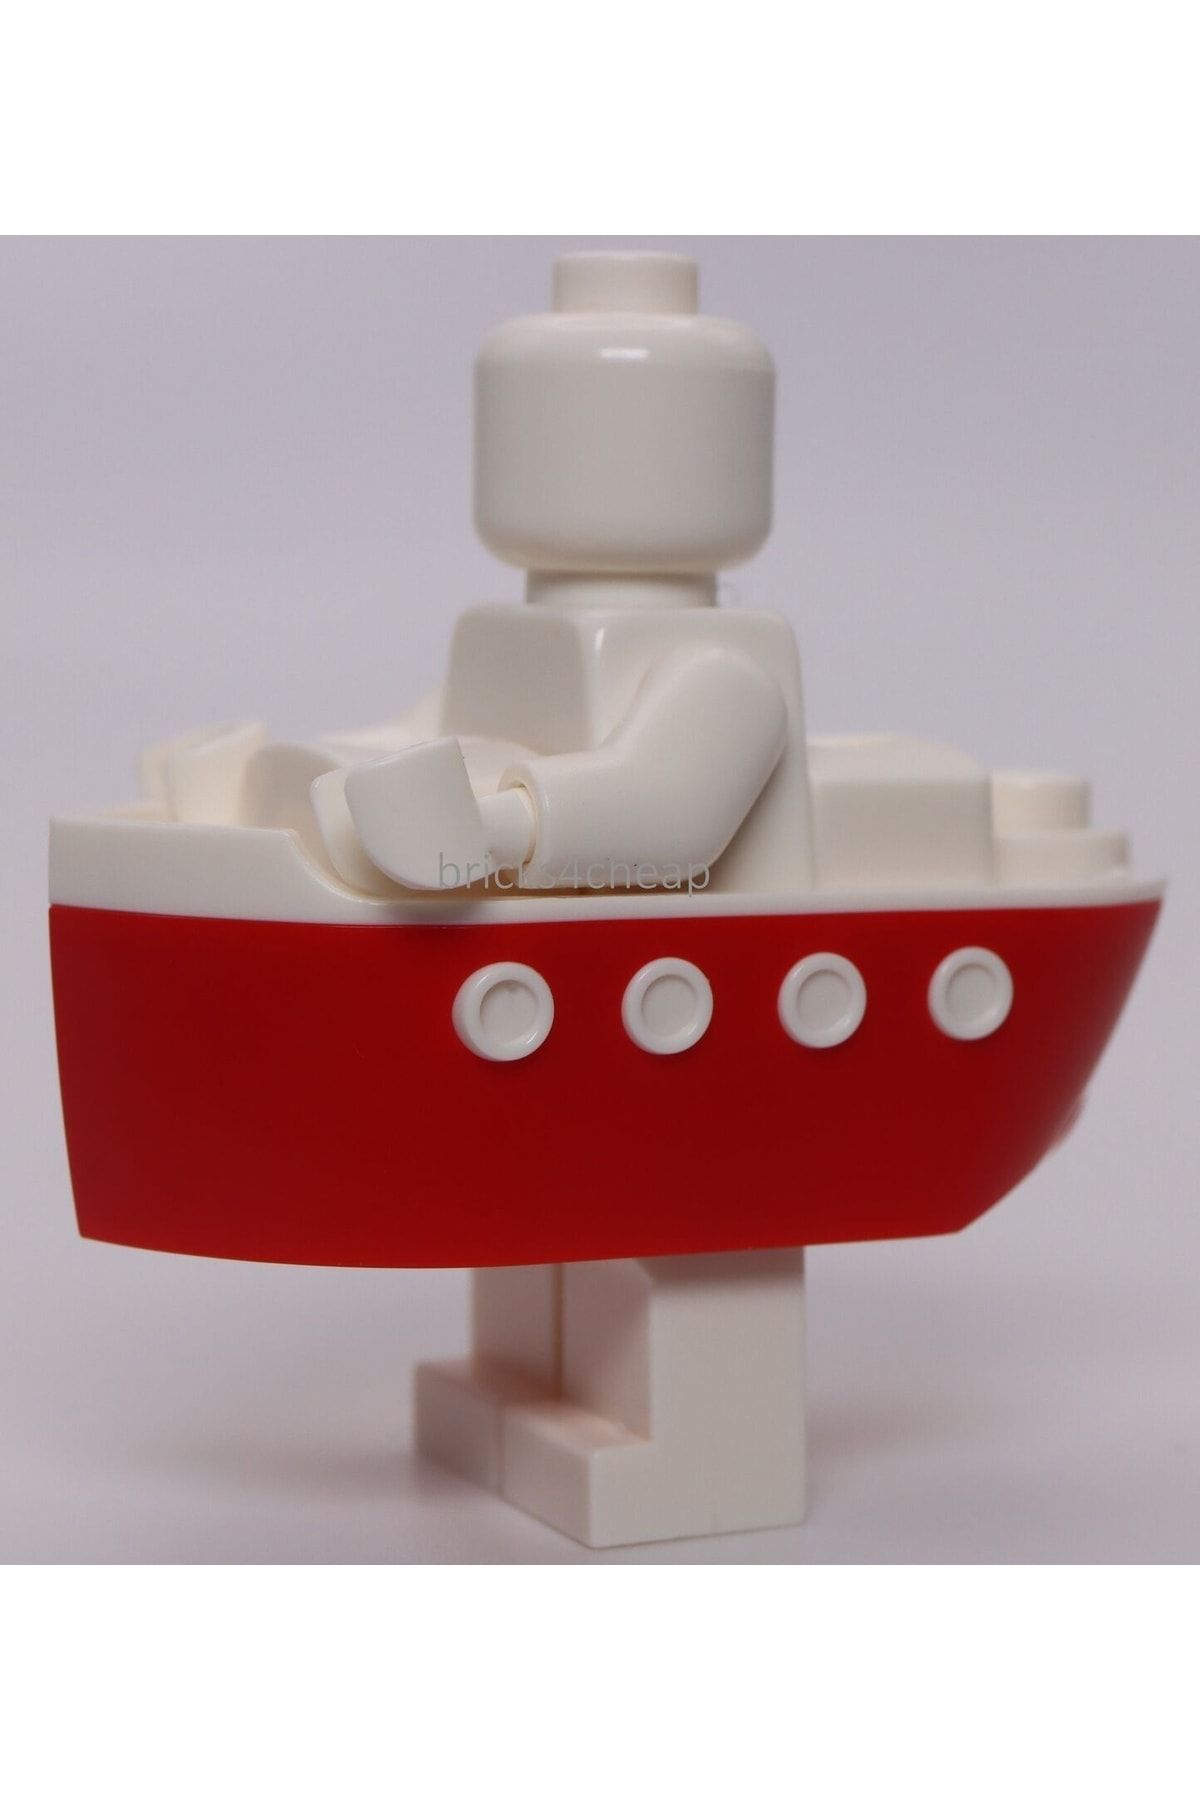 LEGO Orjinal Aksesuar Moc Minifigür Minifigure Kırmızı Gemi Kostüm 1 Adet Gönderilecek